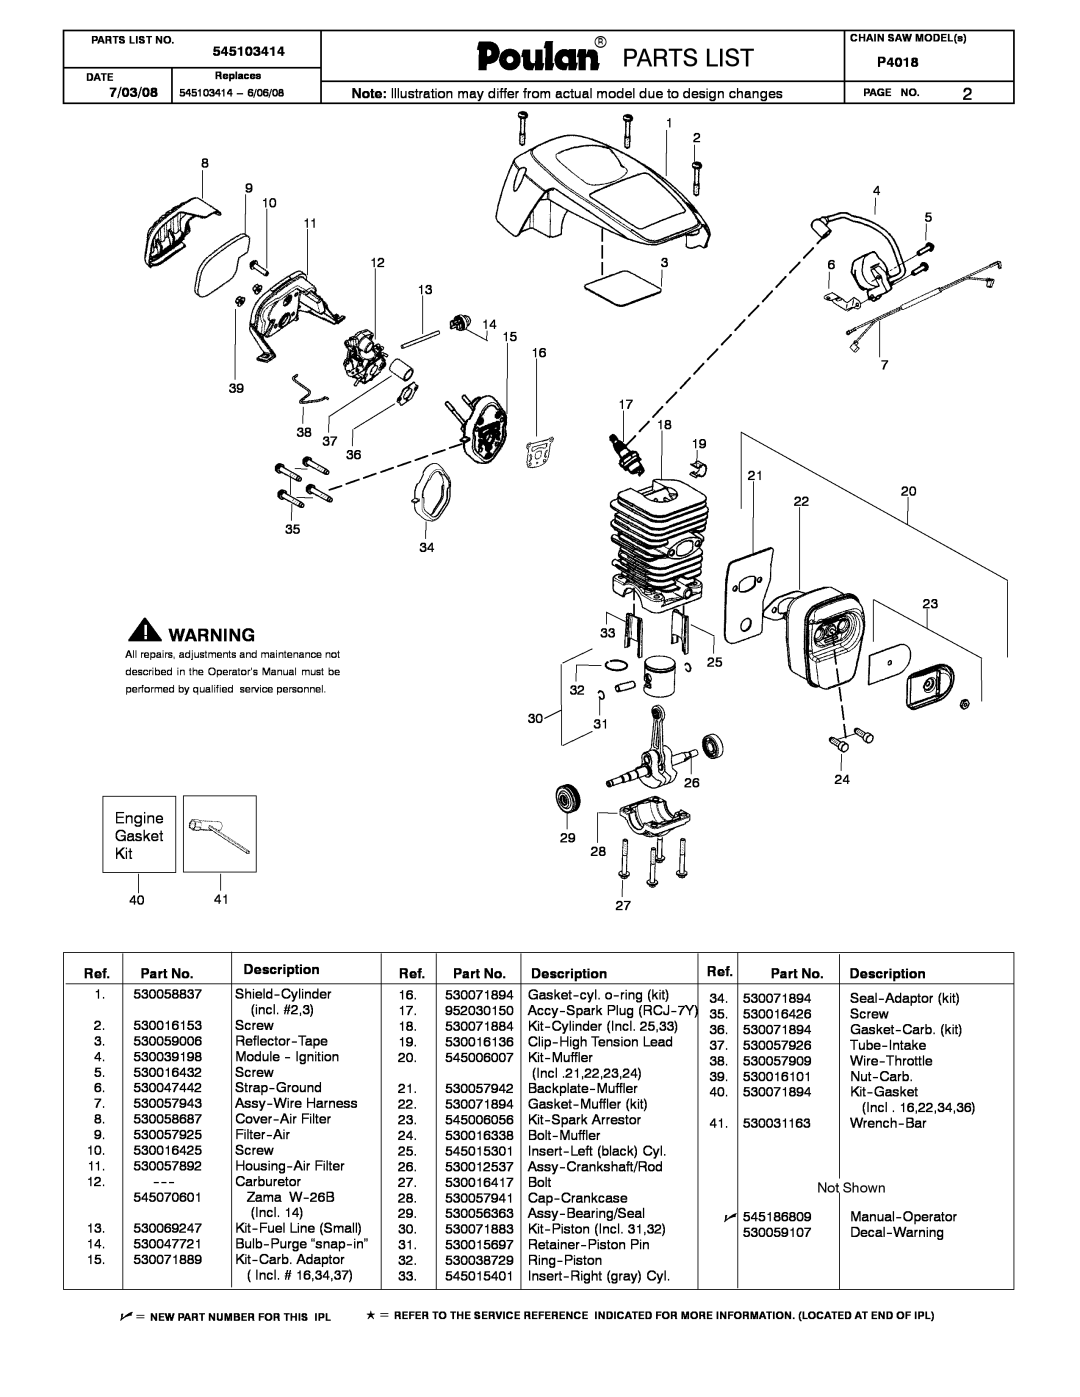 Poulan 545103414 manual WEED EATERRr, Partslist, Engine Gasket Kit, 7/03/08, Description, Paramoupoulant, P4018 